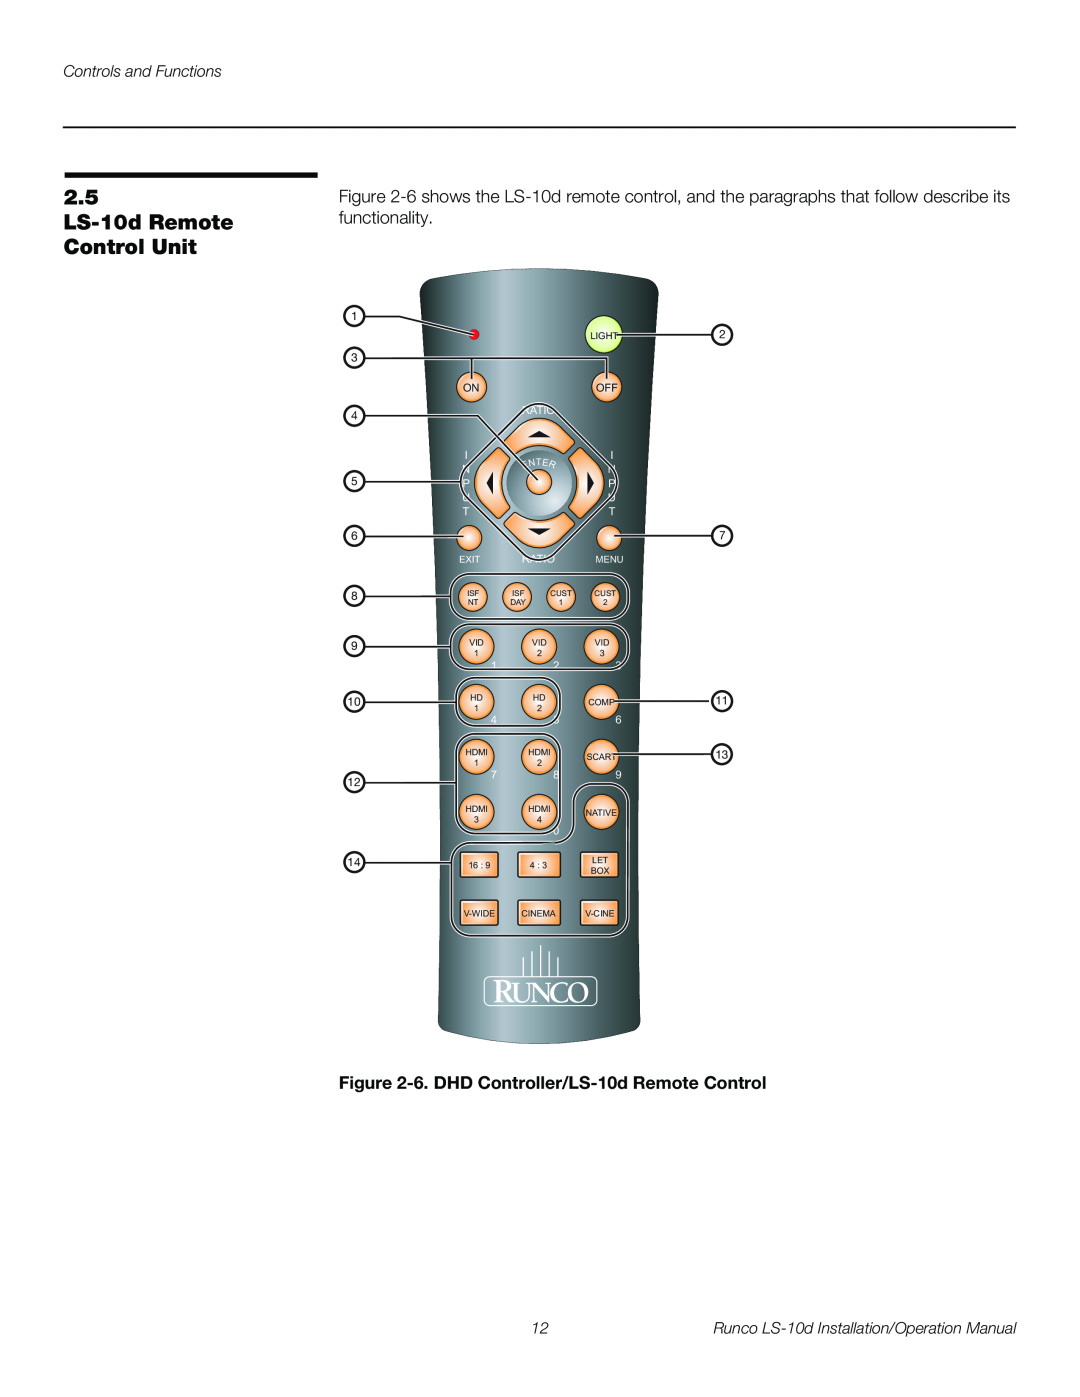 Runco LS-10D 2.5 LS-10d Remote Control Unit, 6. DHD Controller/LS-10d Remote Control, Controls and Functions, Ratio 